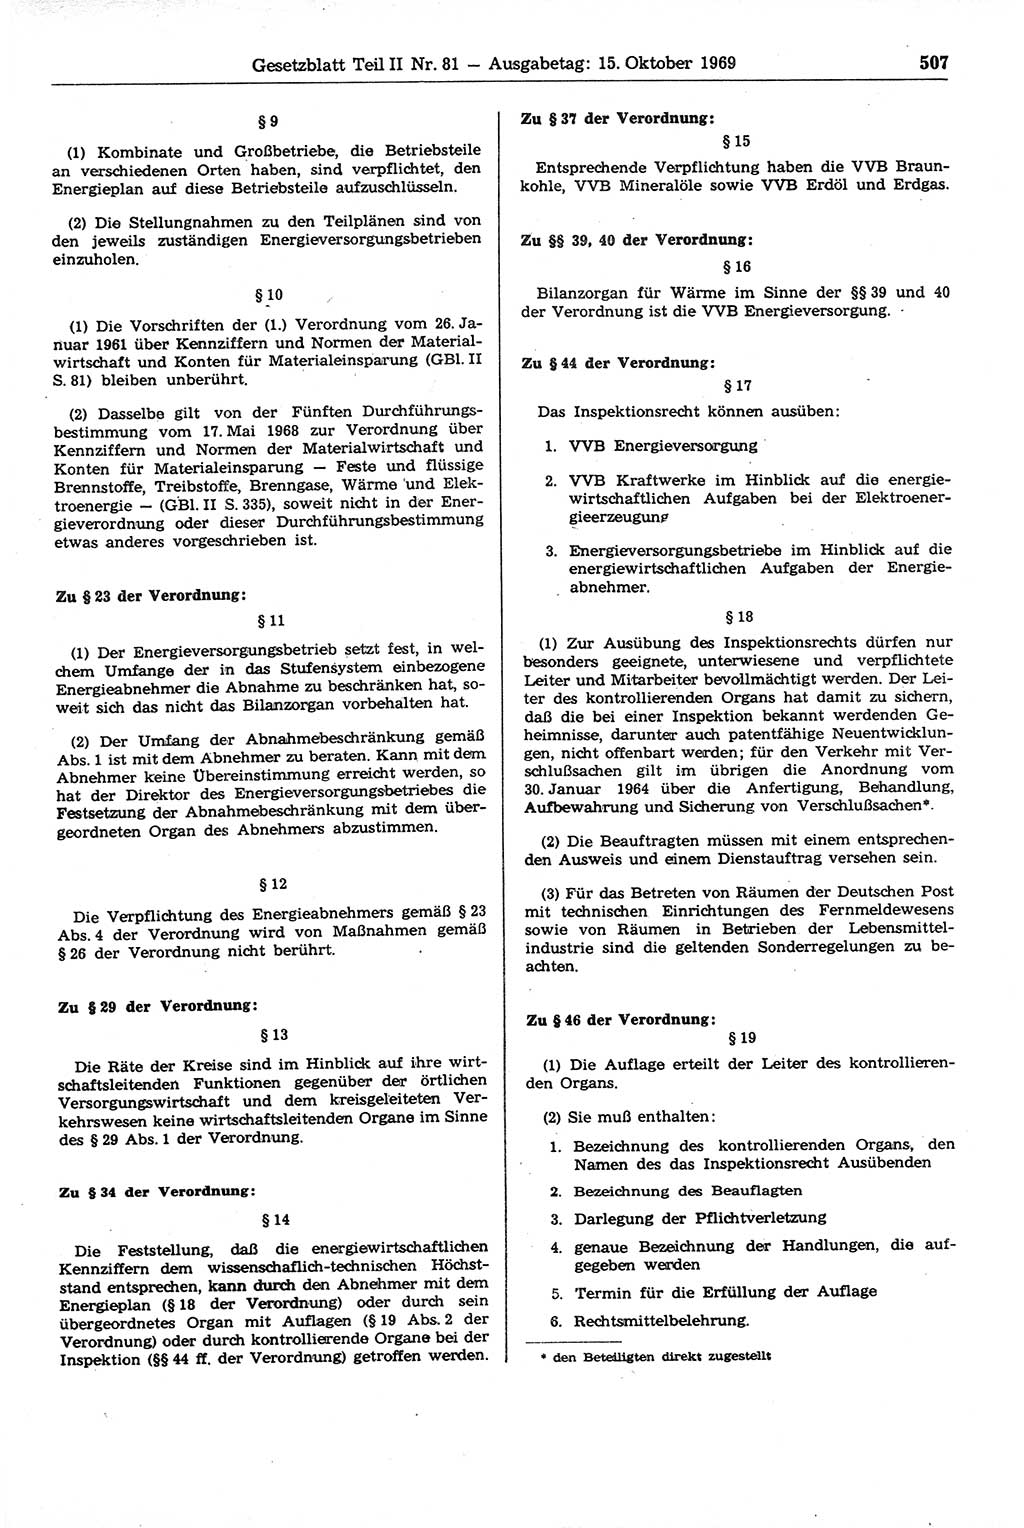 Gesetzblatt (GBl.) der Deutschen Demokratischen Republik (DDR) Teil ⅠⅠ 1969, Seite 507 (GBl. DDR ⅠⅠ 1969, S. 507)